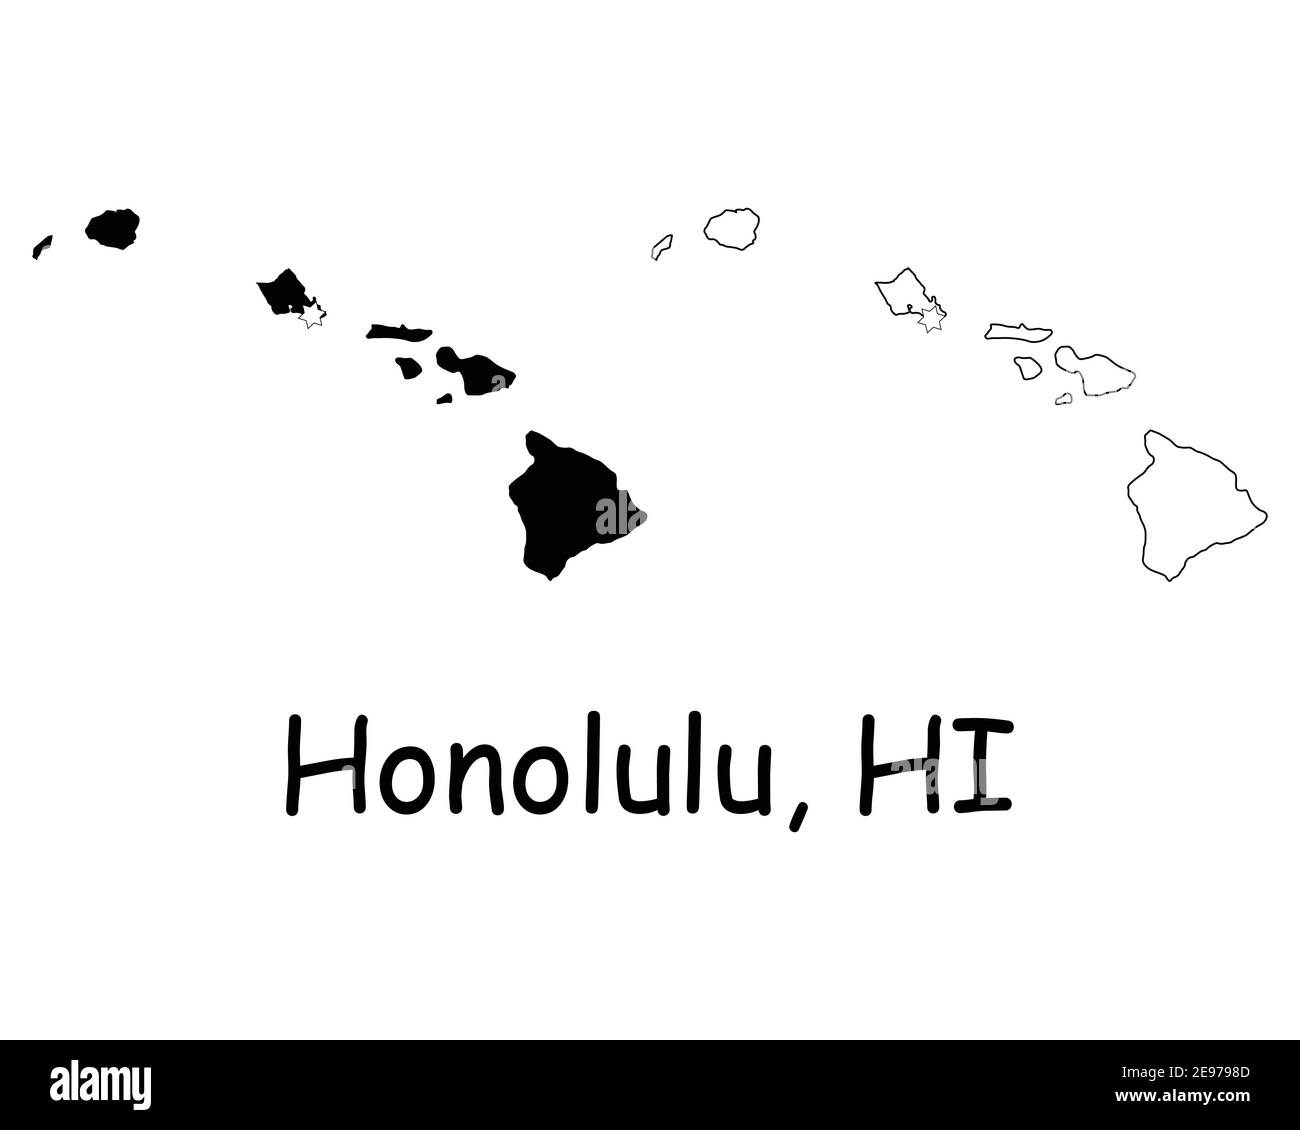 Hawaii HI state Maps USA con la capitale City Star a Honolulu. Silhouette nera e profilo isolato su sfondo bianco. Vettore EPS Illustrazione Vettoriale